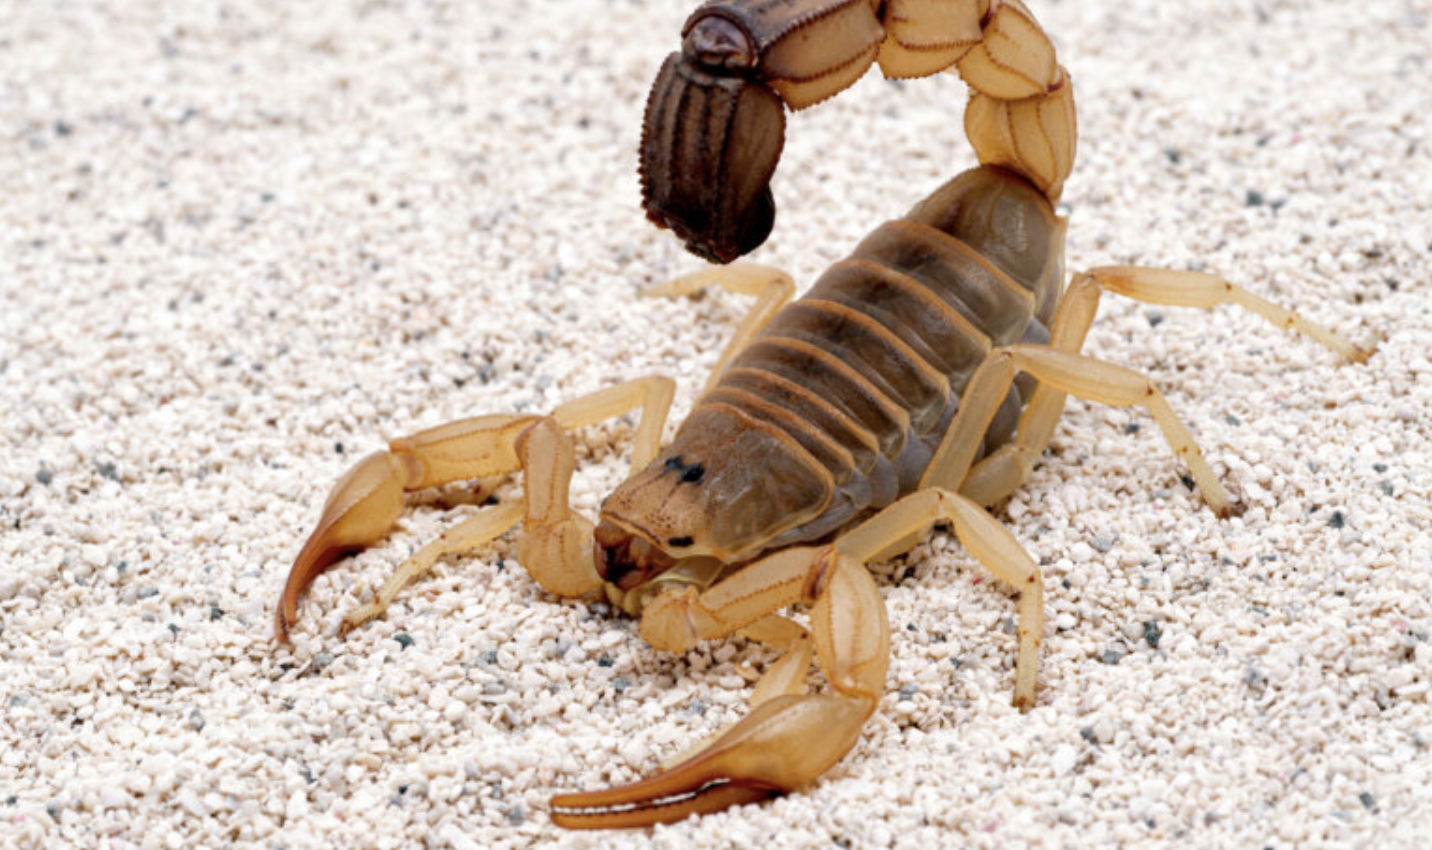 Los escorpiones son una de las especies arácnidas con las que más se trafica en el mundo.